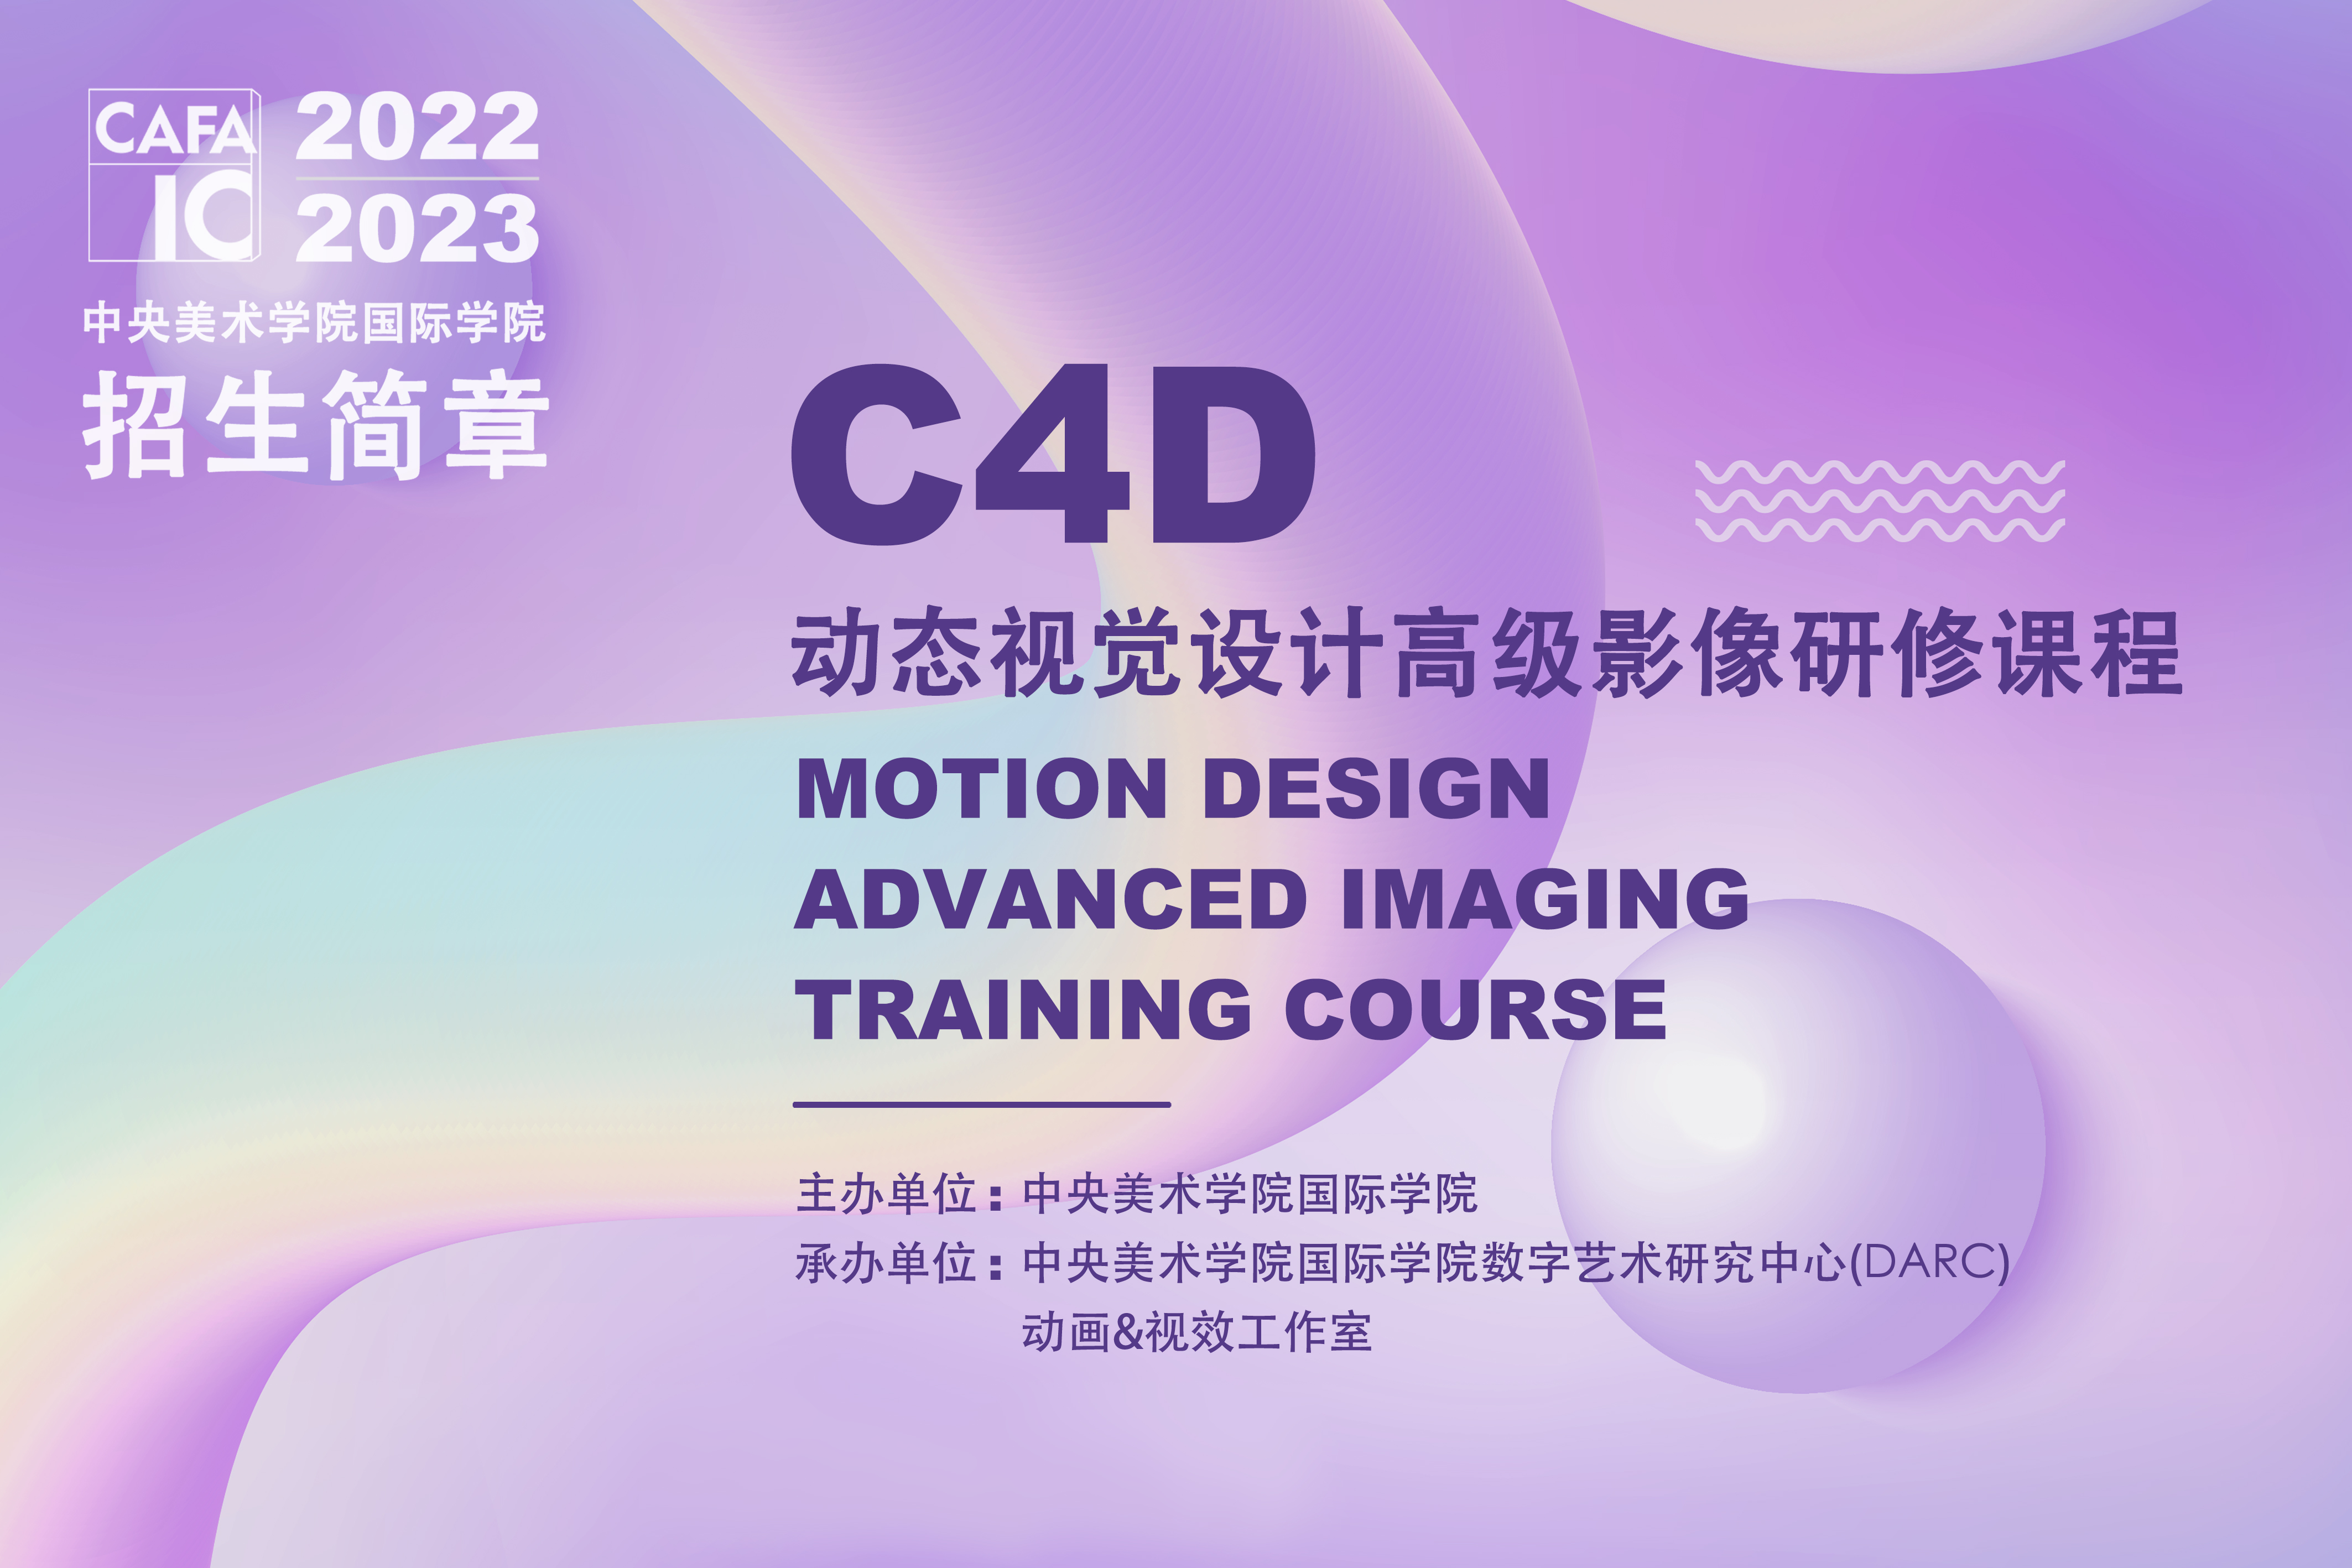 中央美术学院国际学院C4D动态视觉设计高级影像研修课程图片